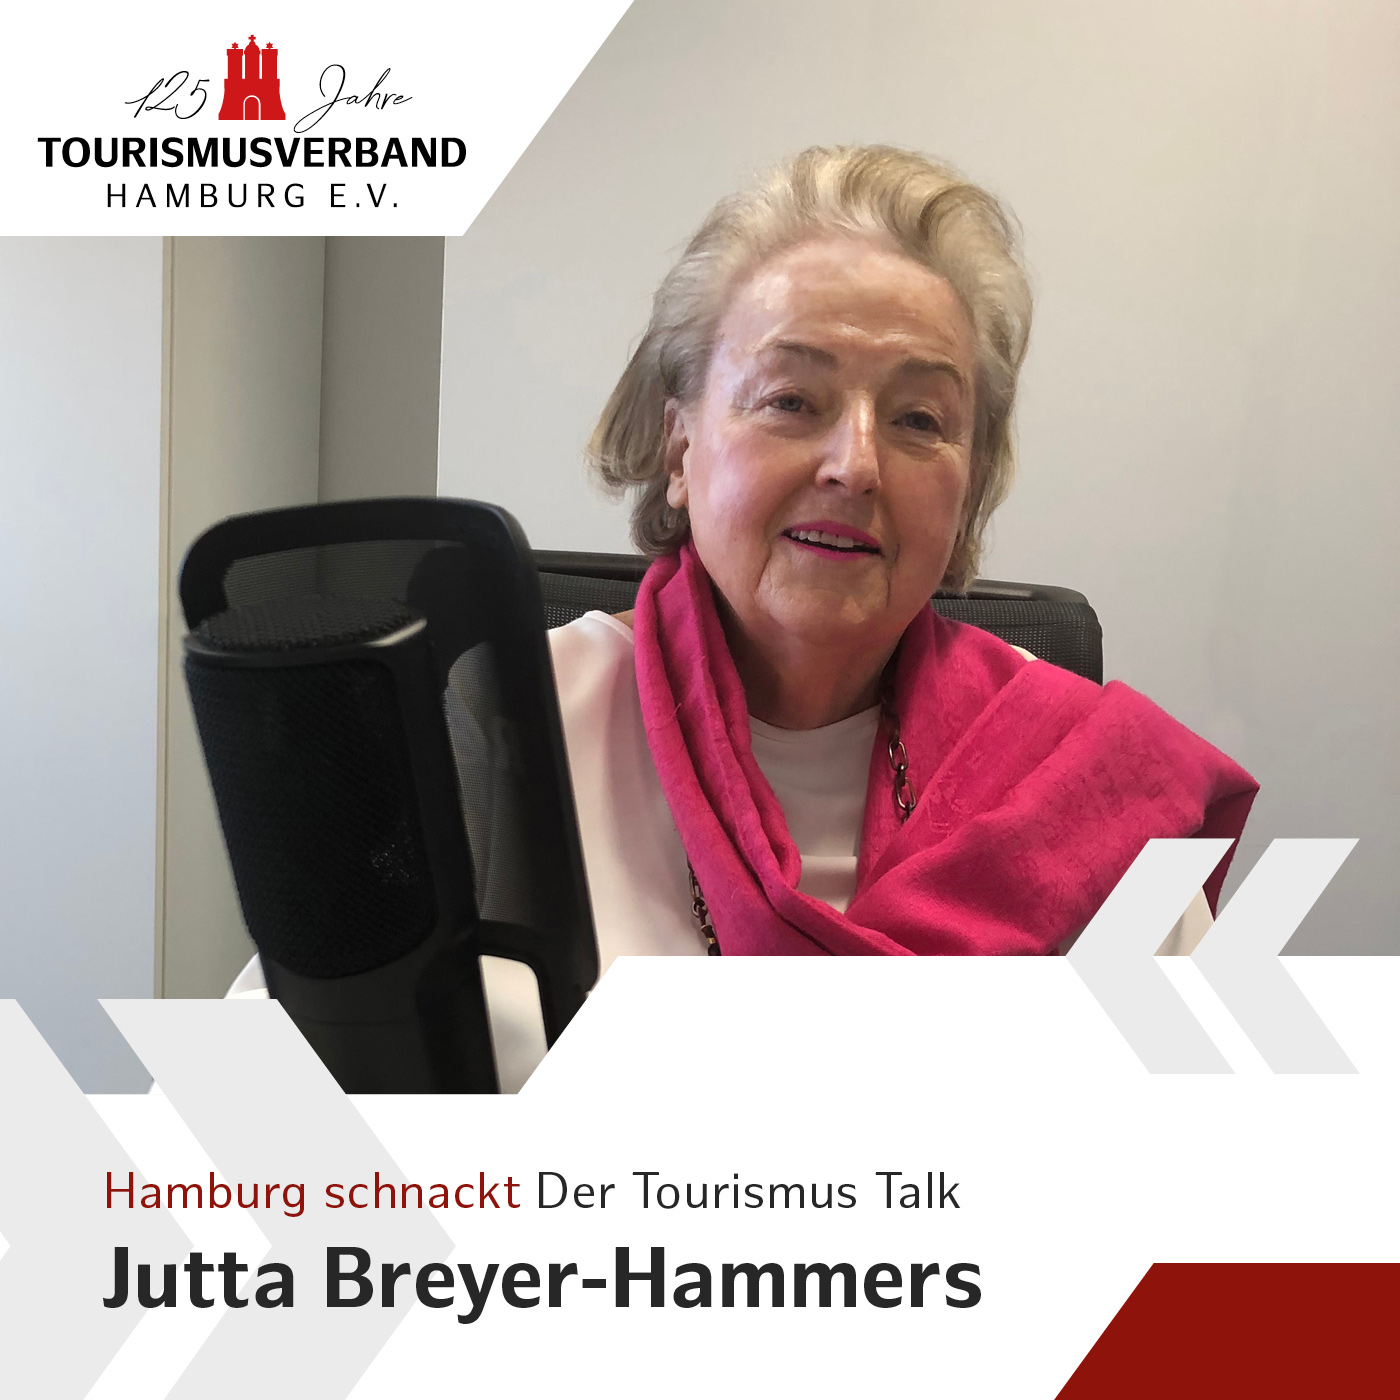 Hamburg schnackt mit Jutta Breyer-Hammers